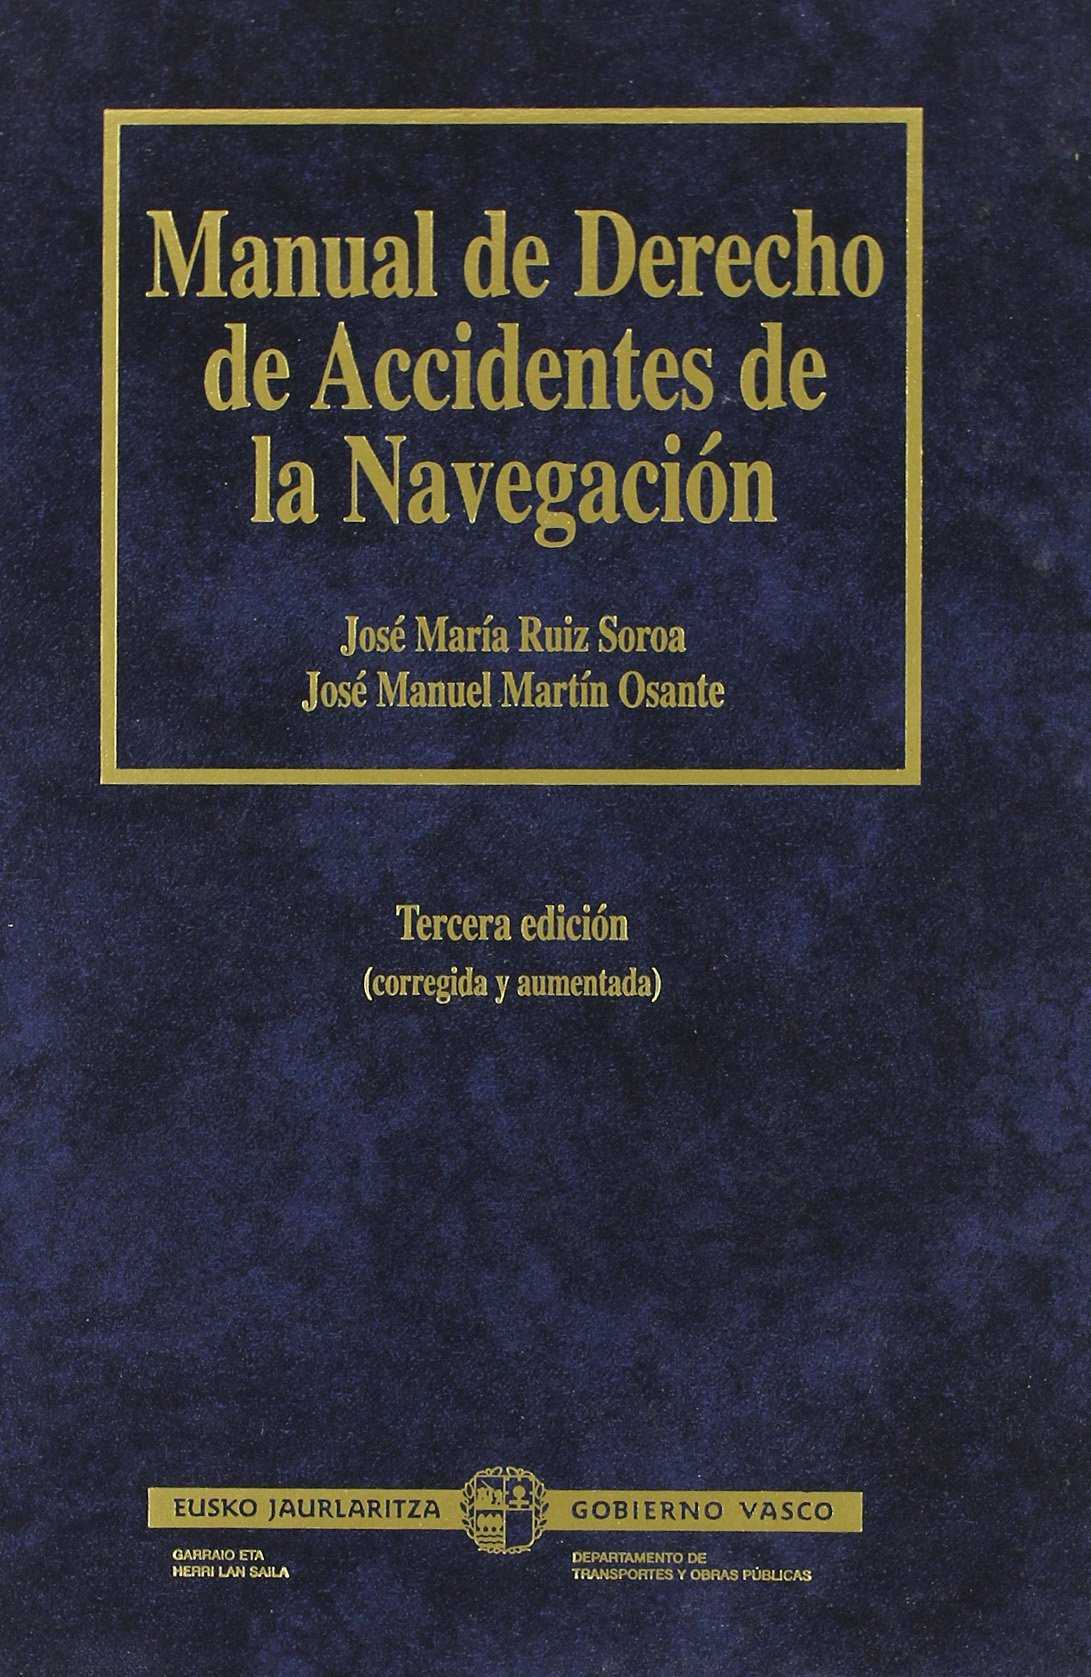 Manual de Derecho de accidentes de la navegación